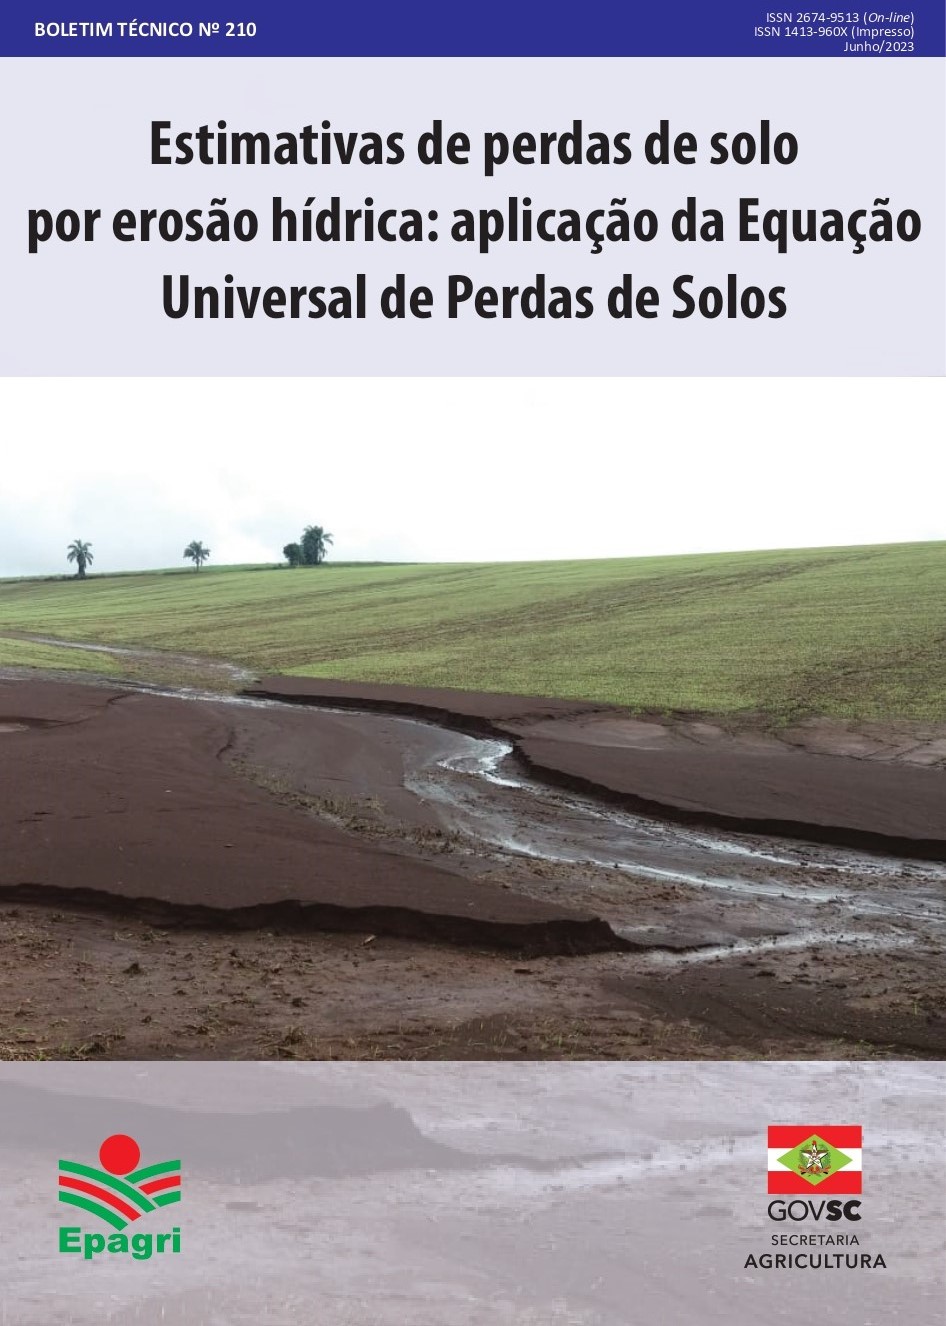 					View No. 210 (2023): Estimativas de perdas de solo por erosão hídrica por meio da Equação Universal de Perdas de Solo
				